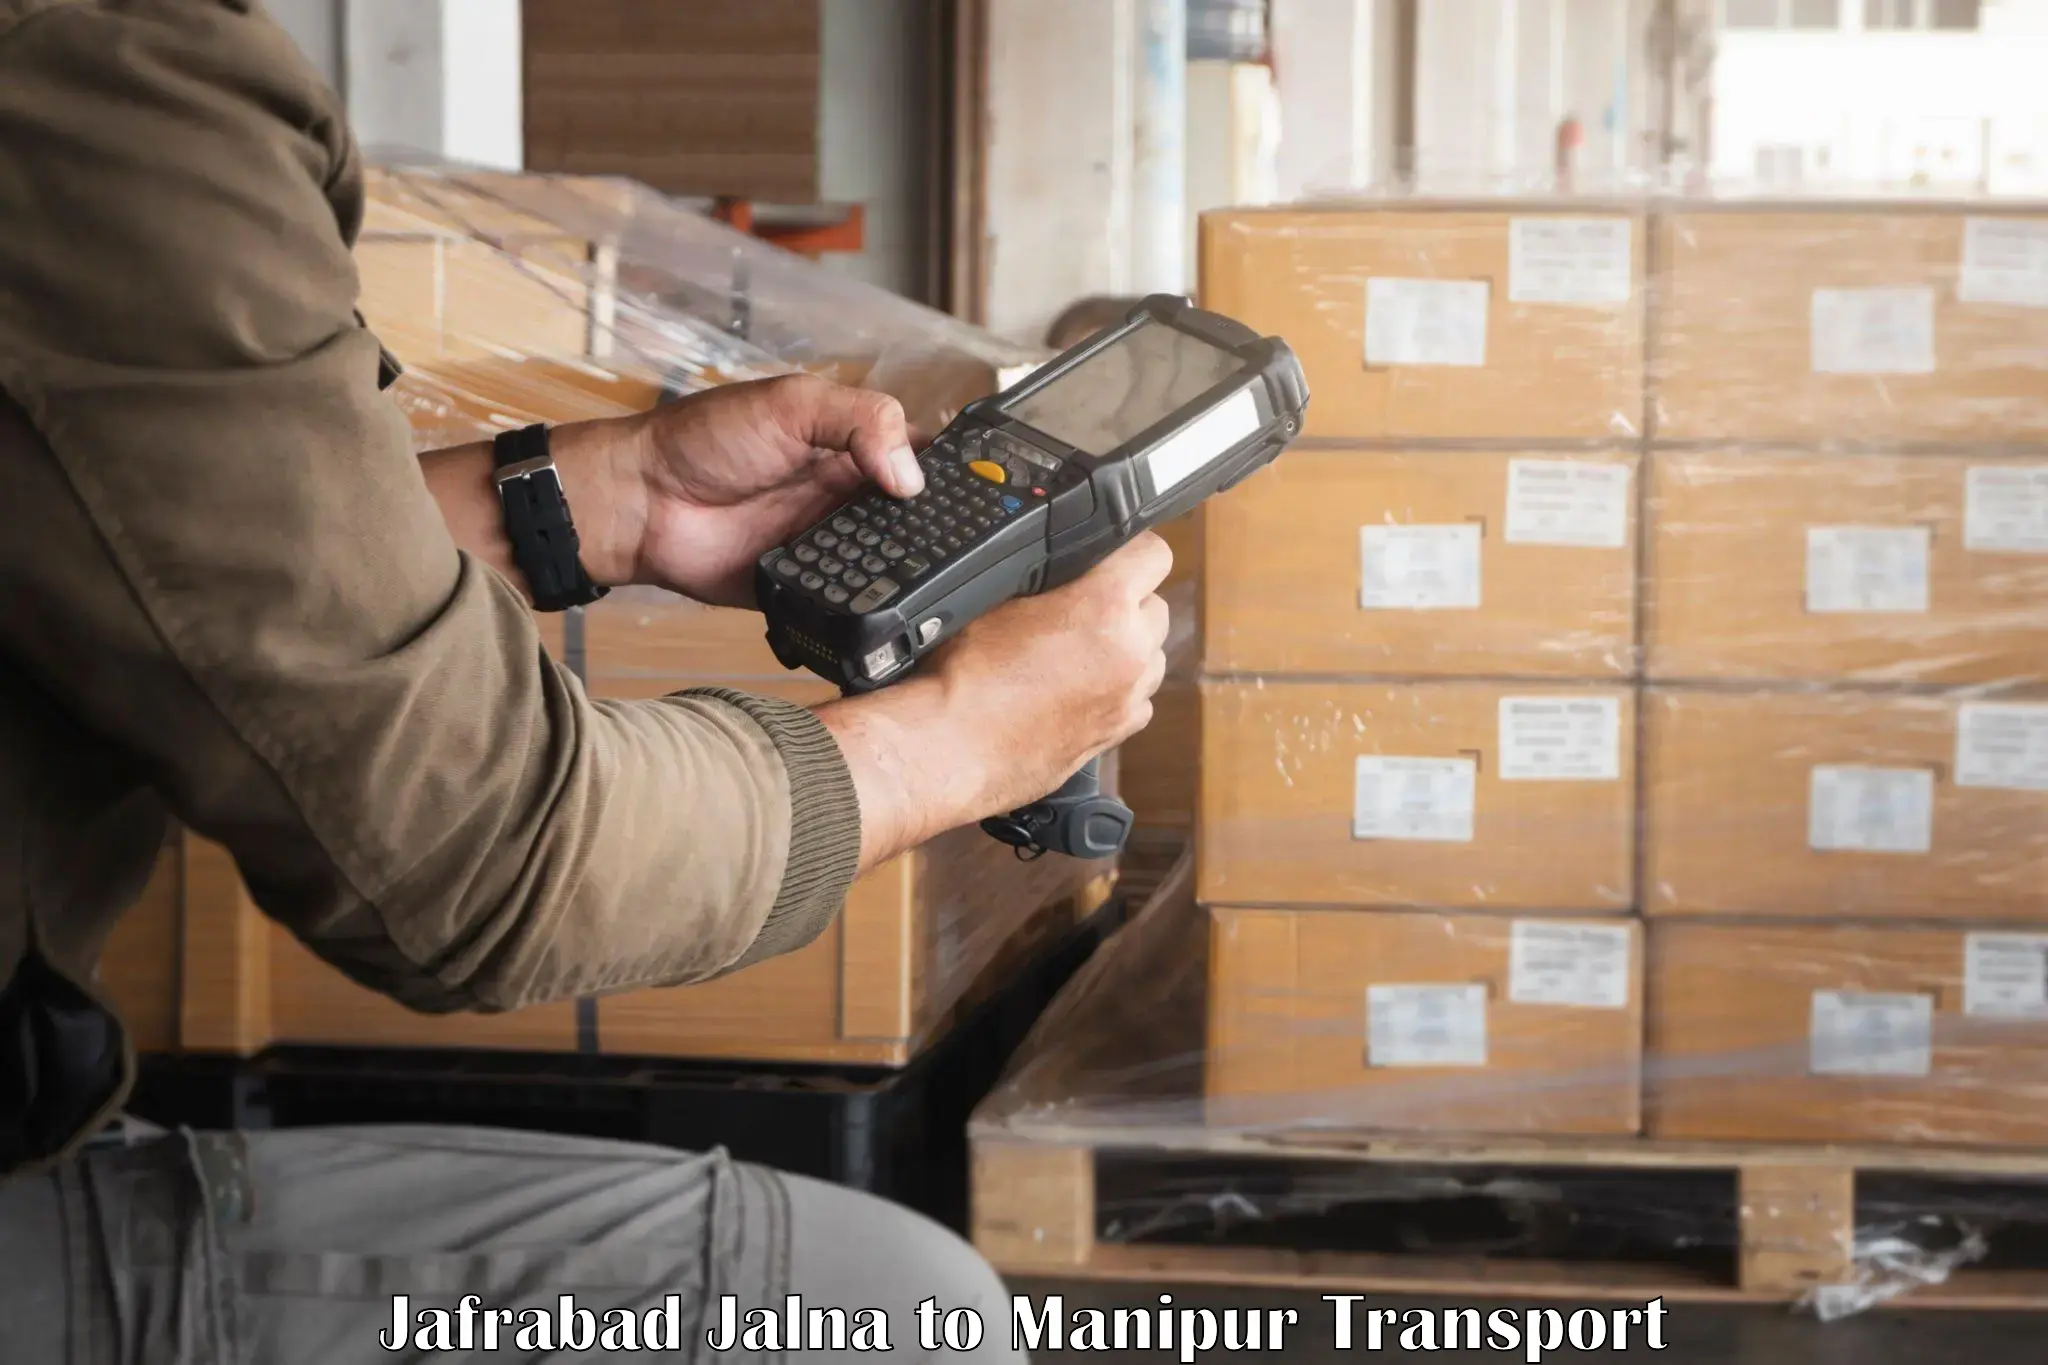 Online transport service Jafrabad Jalna to Manipur